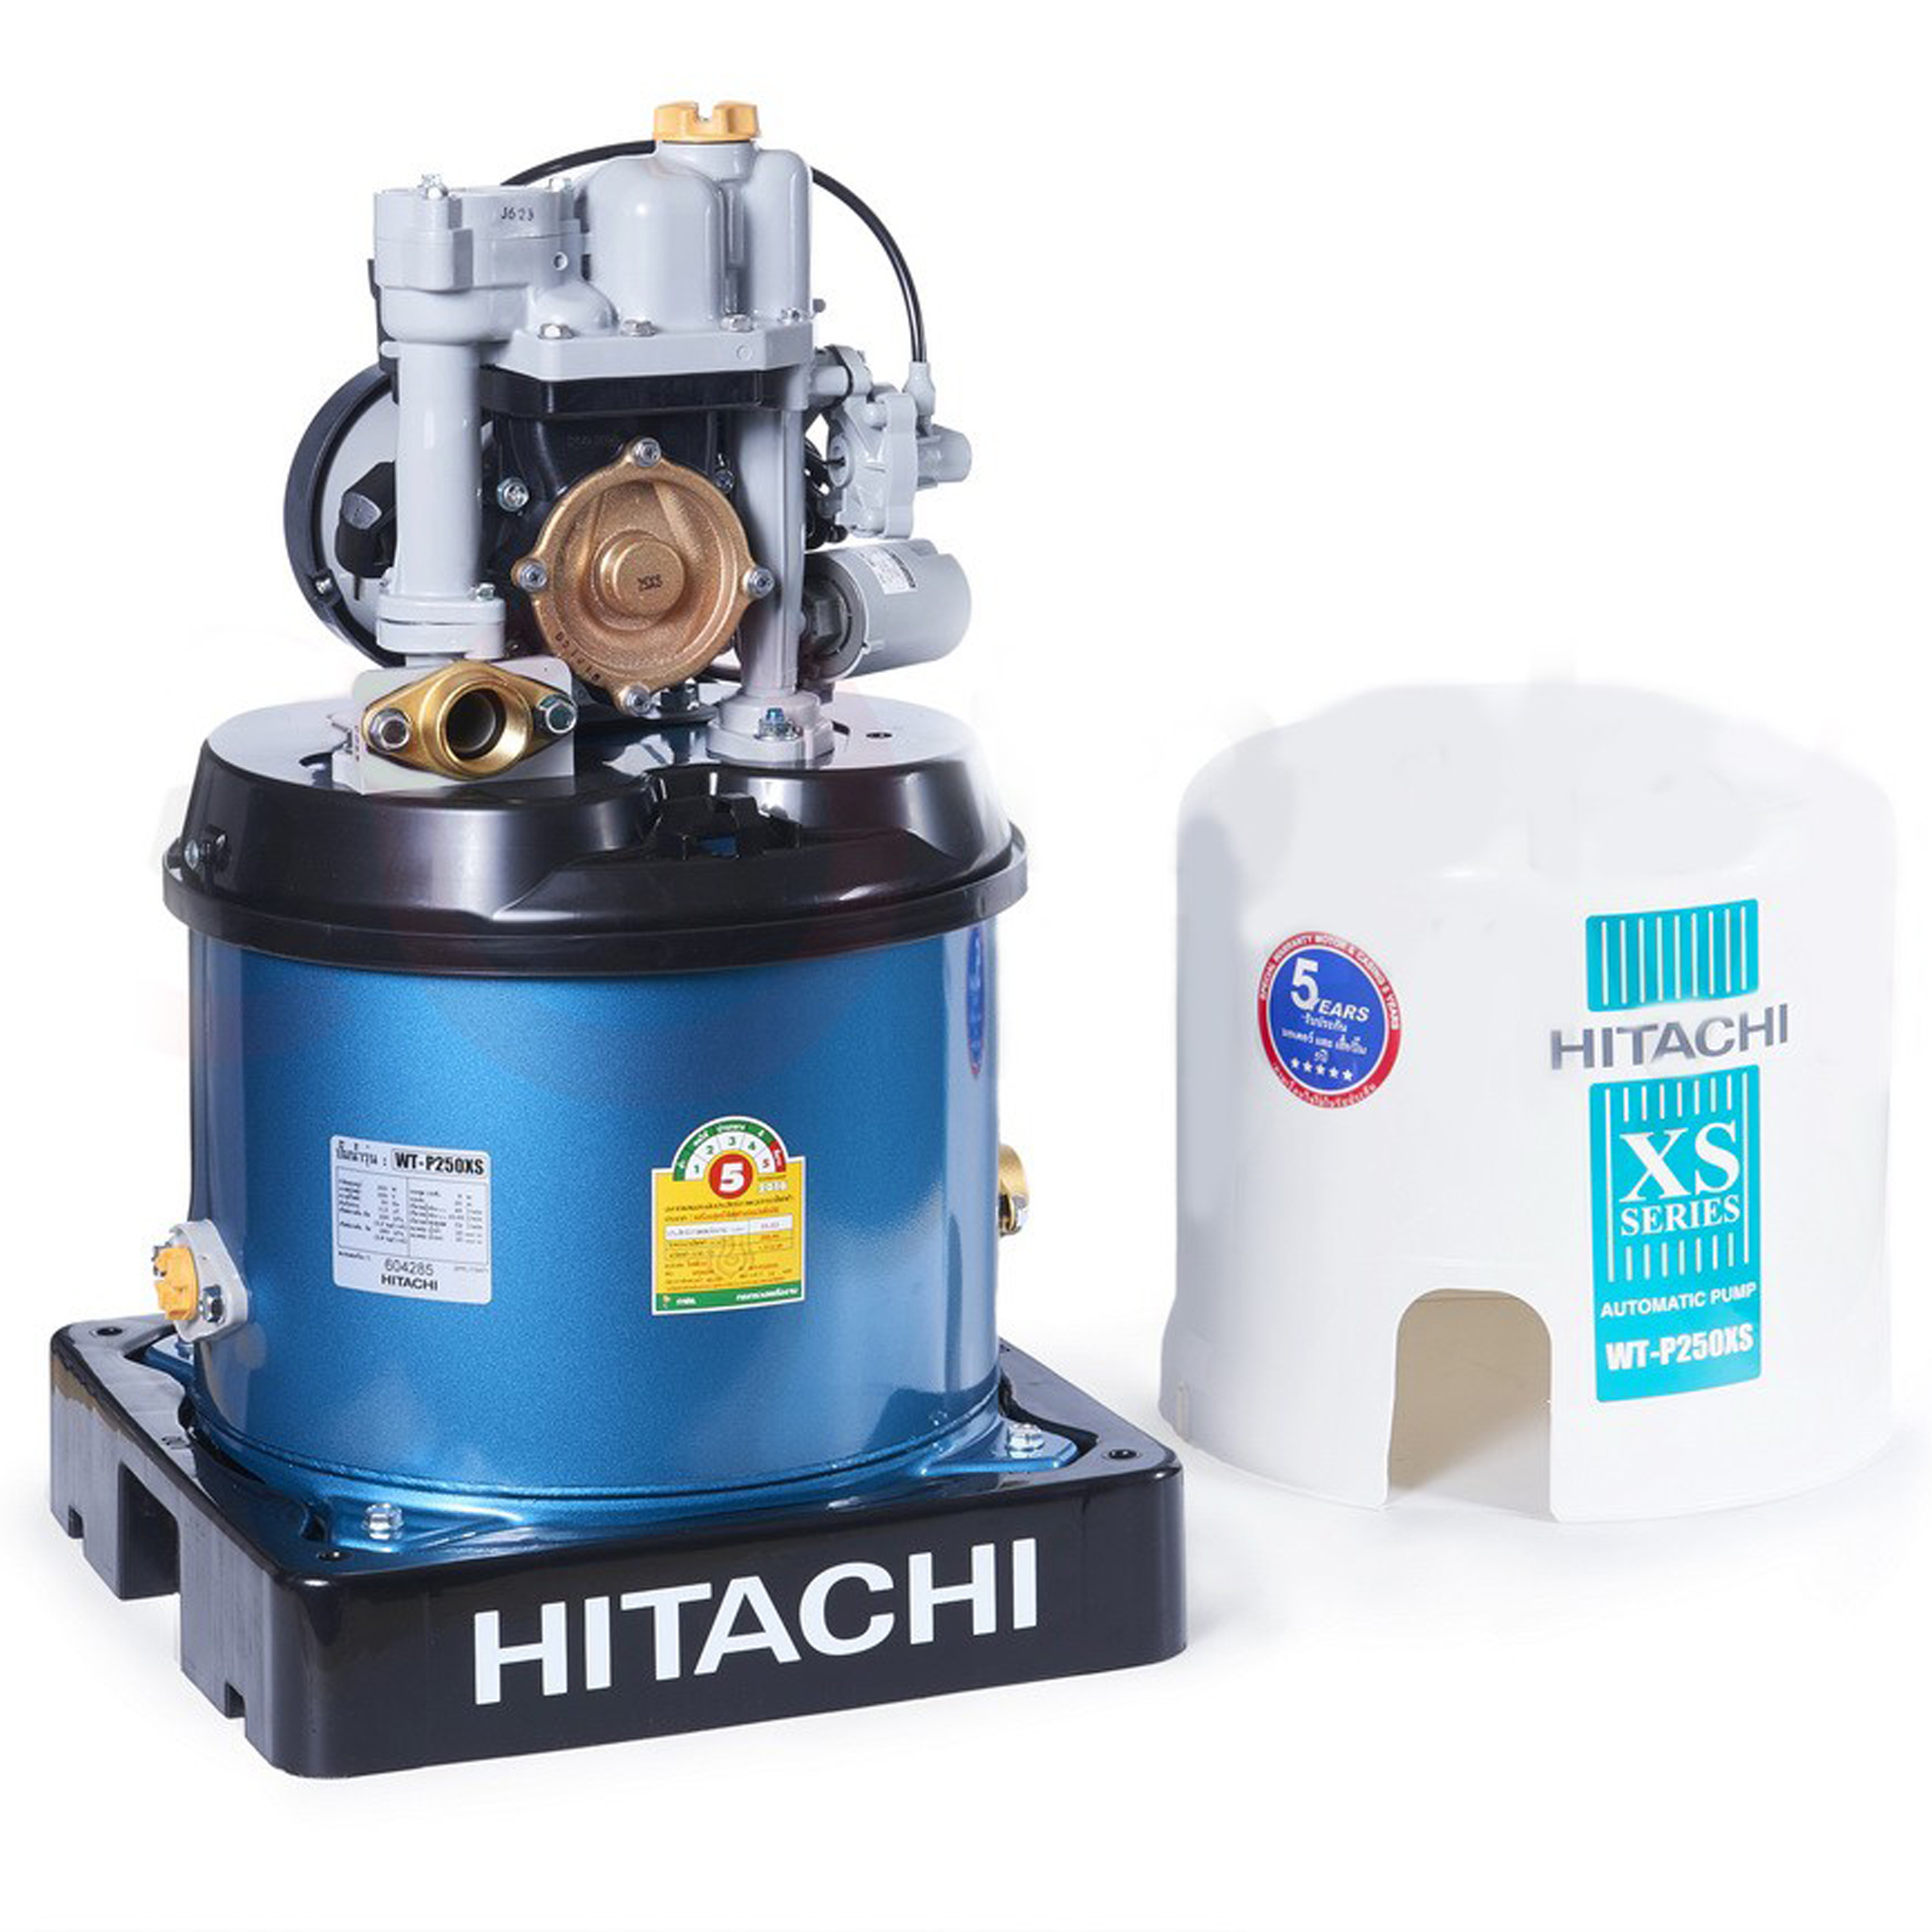 HITACHI Automatic Pump 250W, 46L/min, WT-P250XS